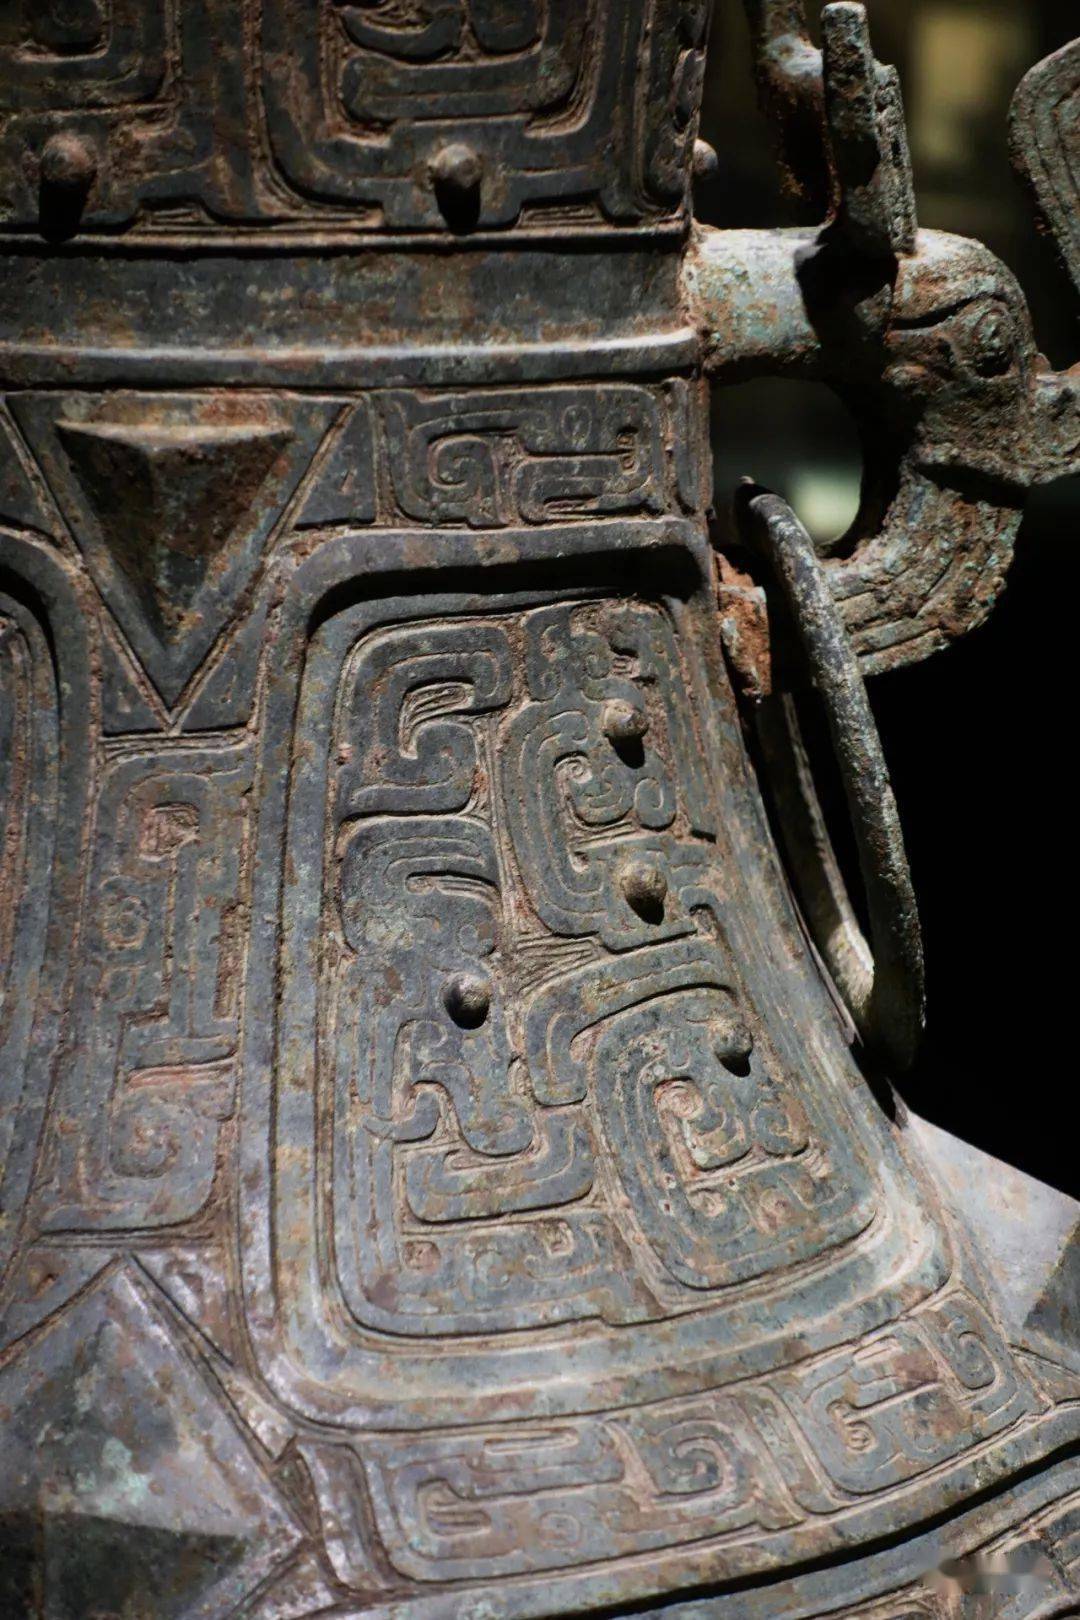 商代晚期至西周早期青铜艺术辉煌灿烂.